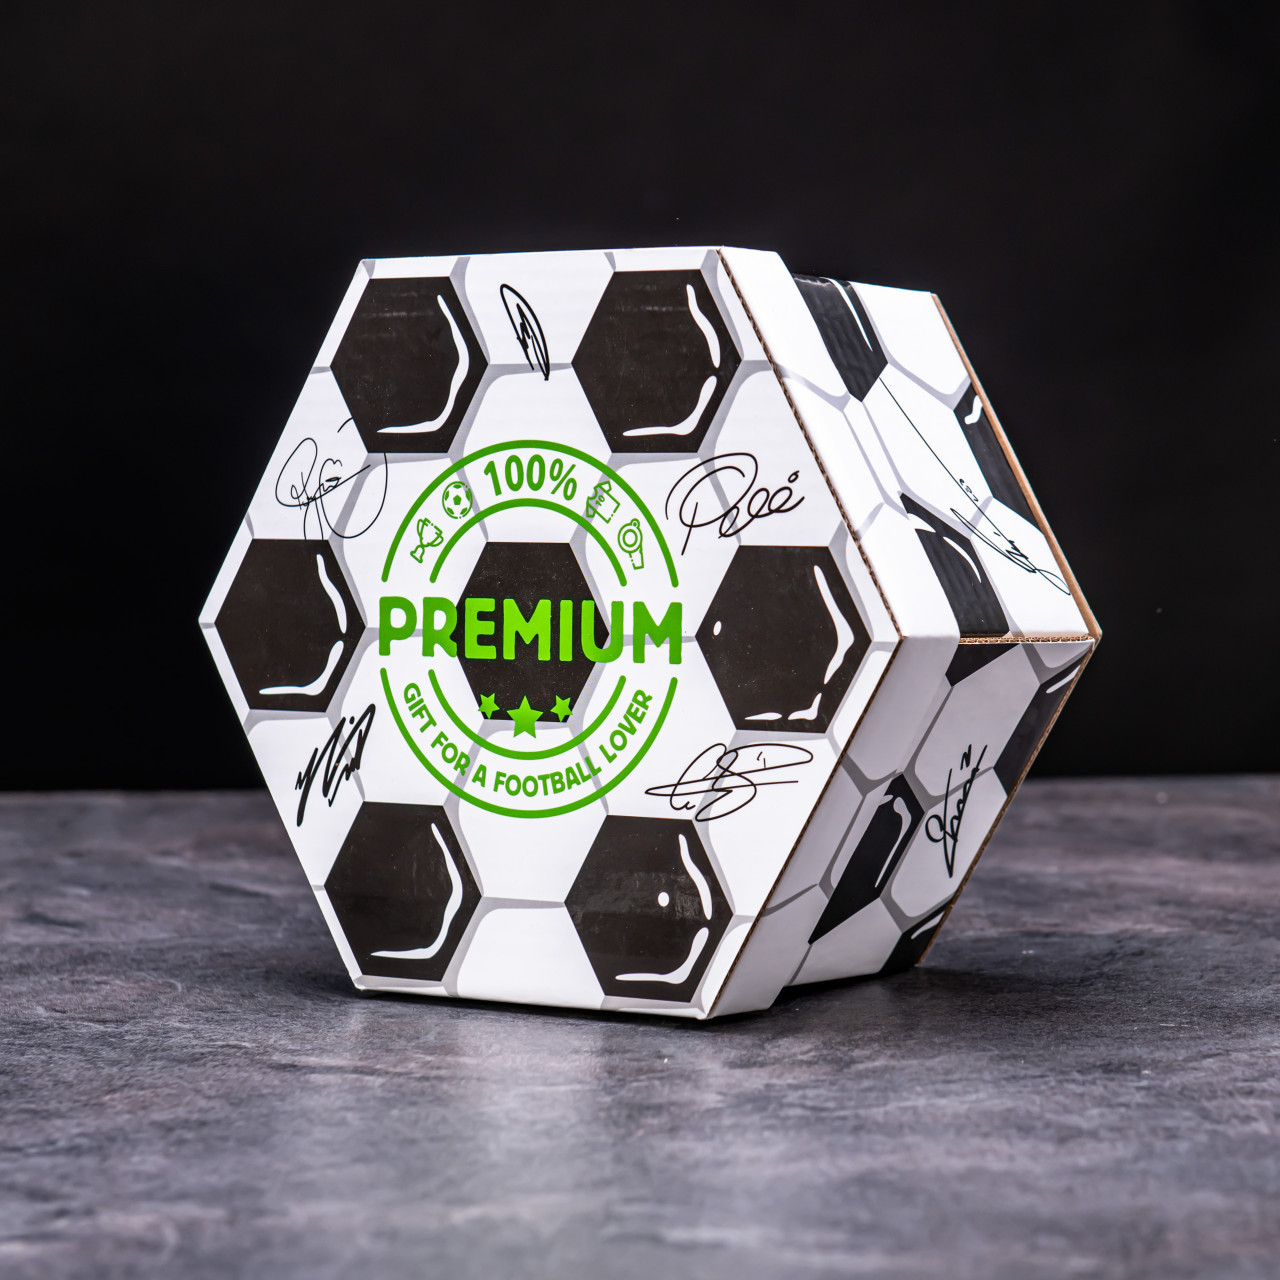 Hexagon plný specilait s alkoholem - Fotbalový